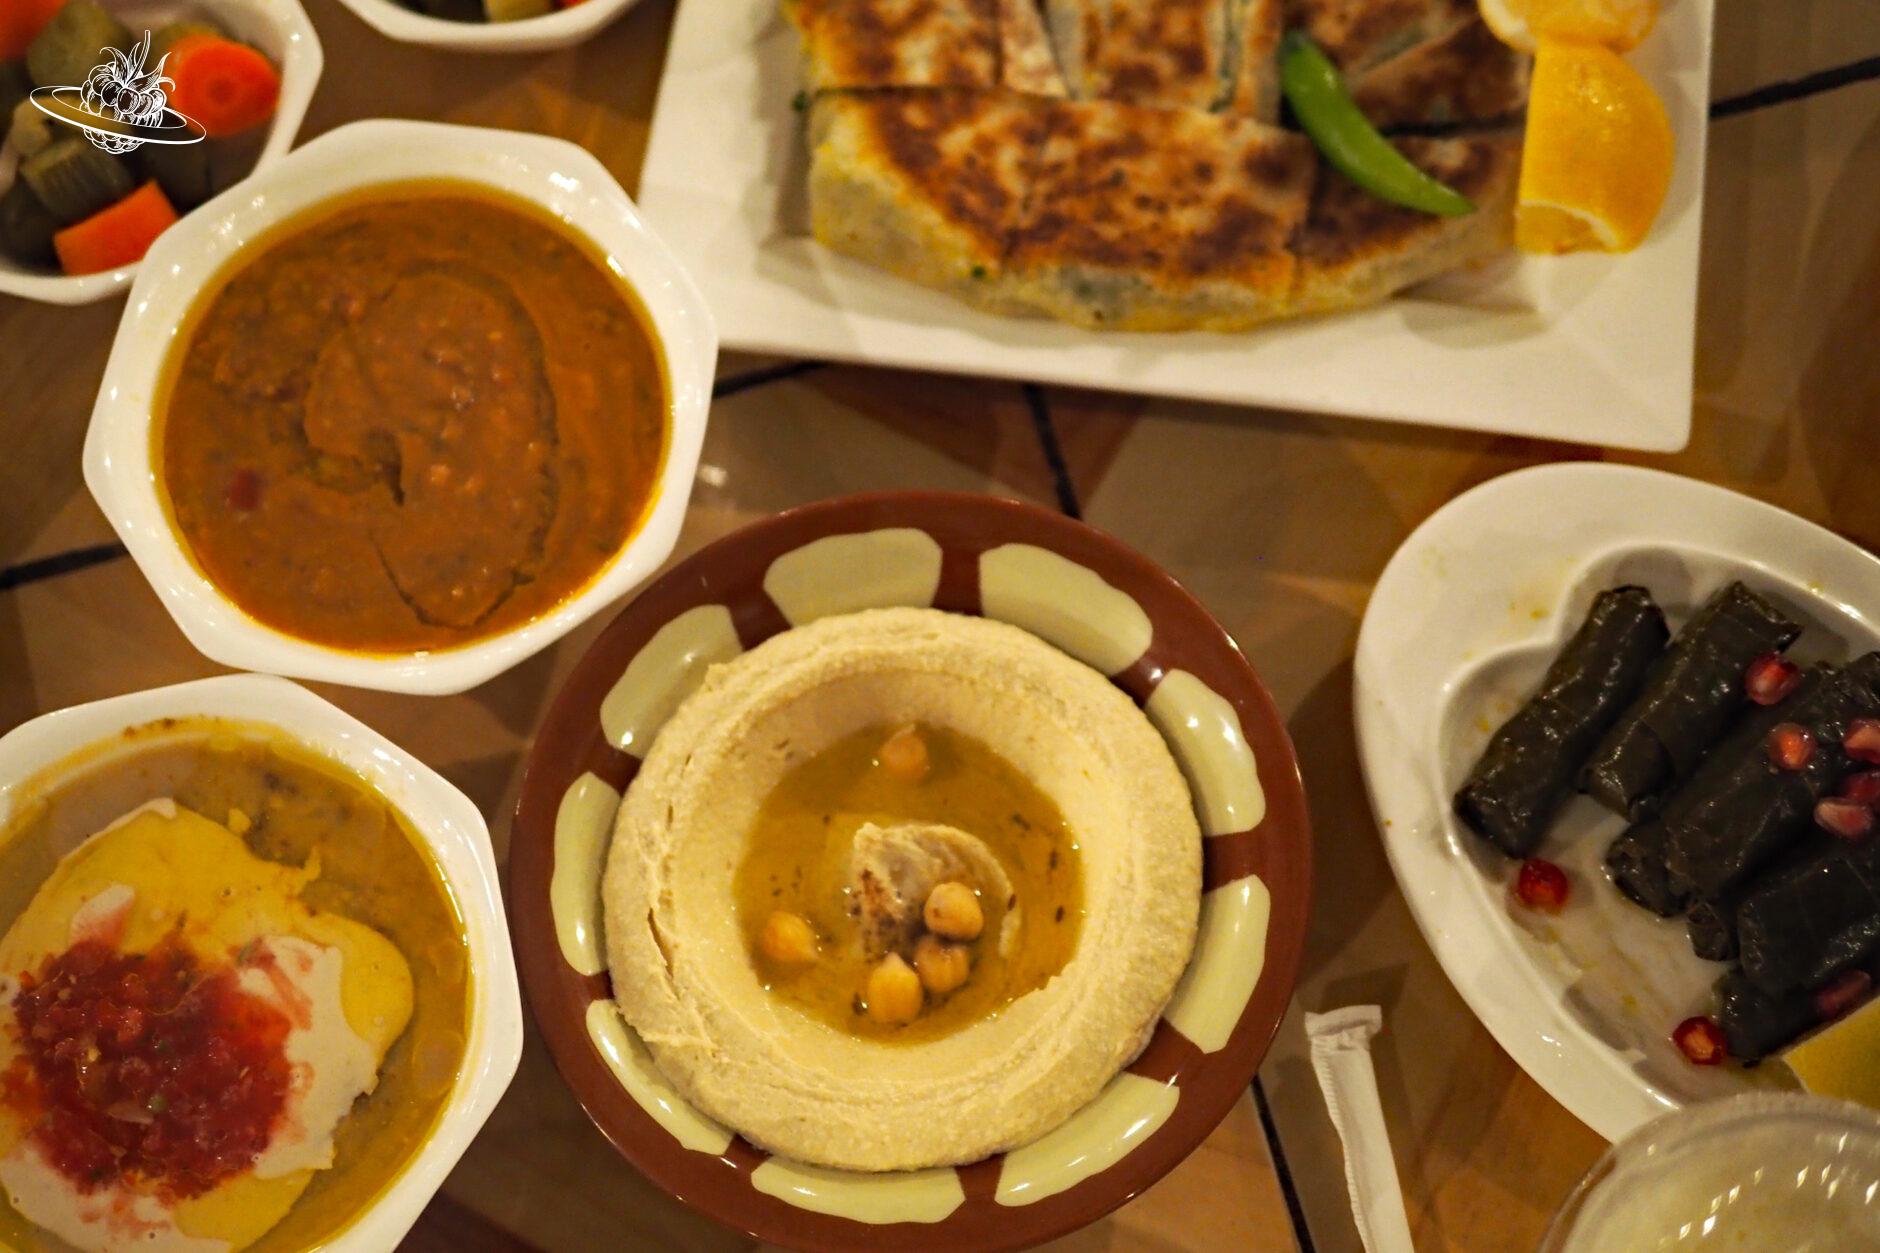 Arabisches Essen mit Dips und einer Art Omelette und Weinblättersushi